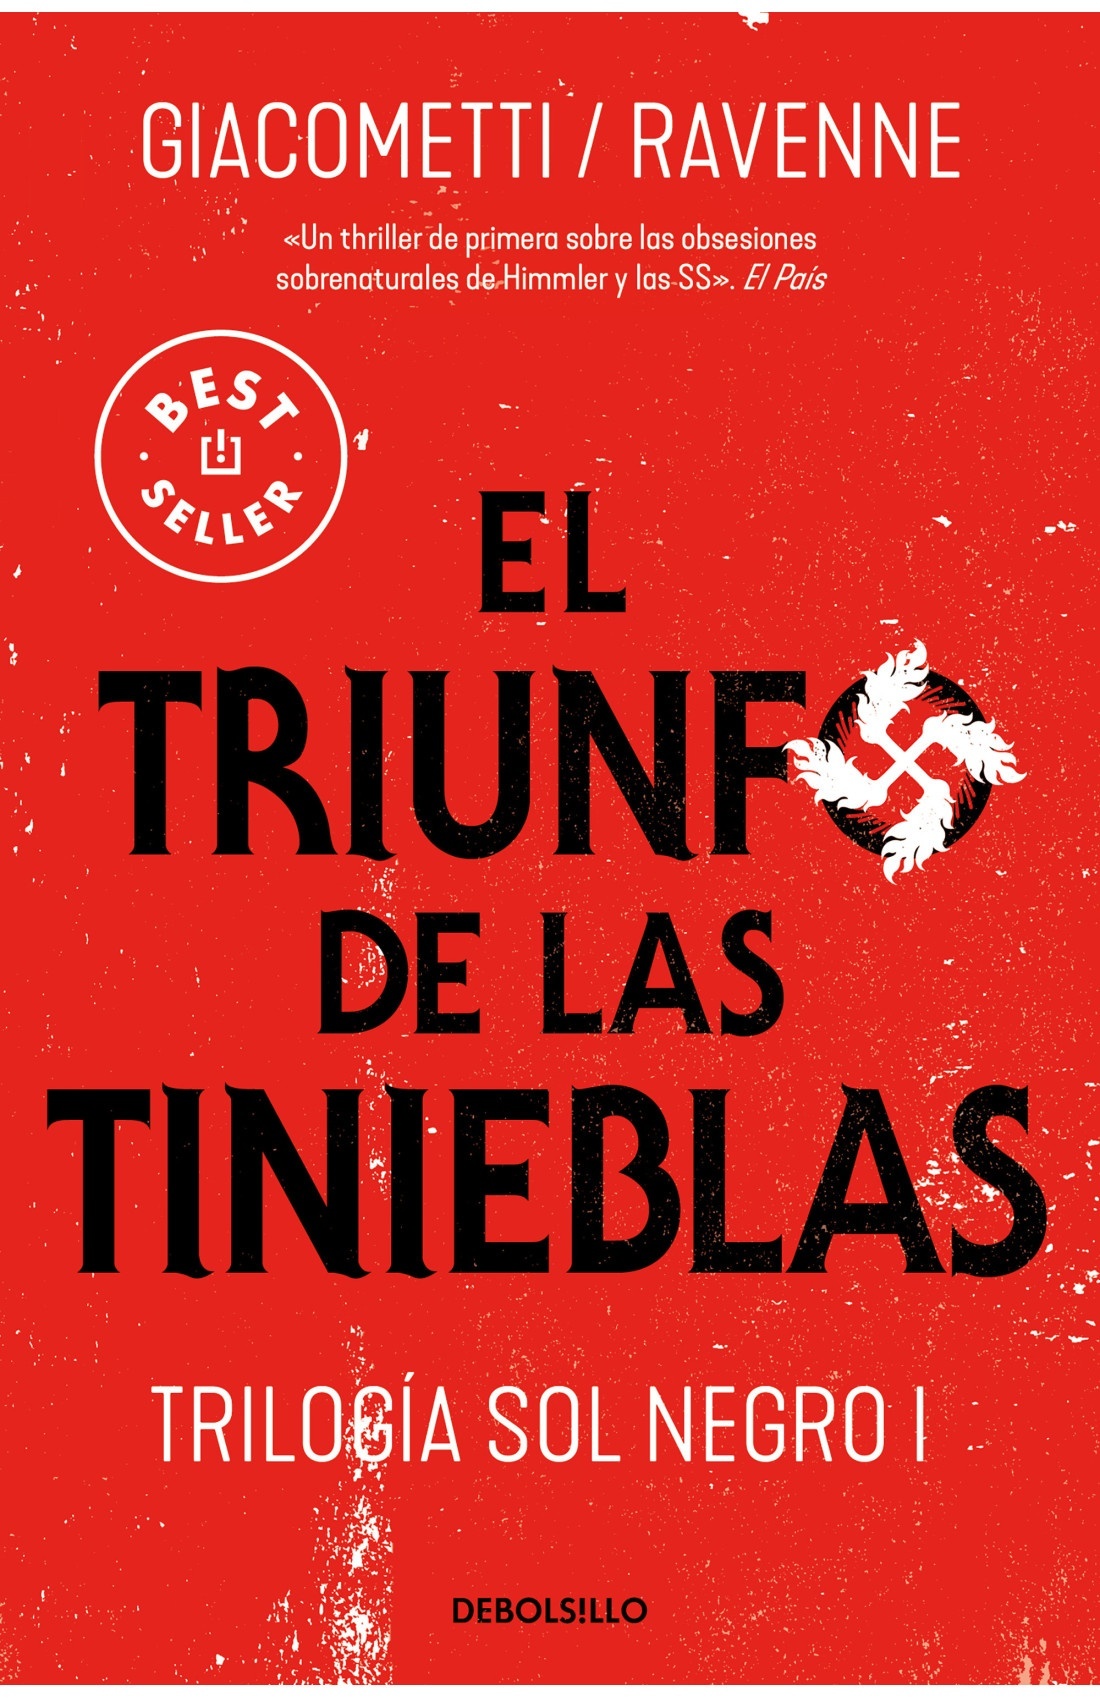 Triunfo en las tinieblas "Trilogía Sol Negro 1". 